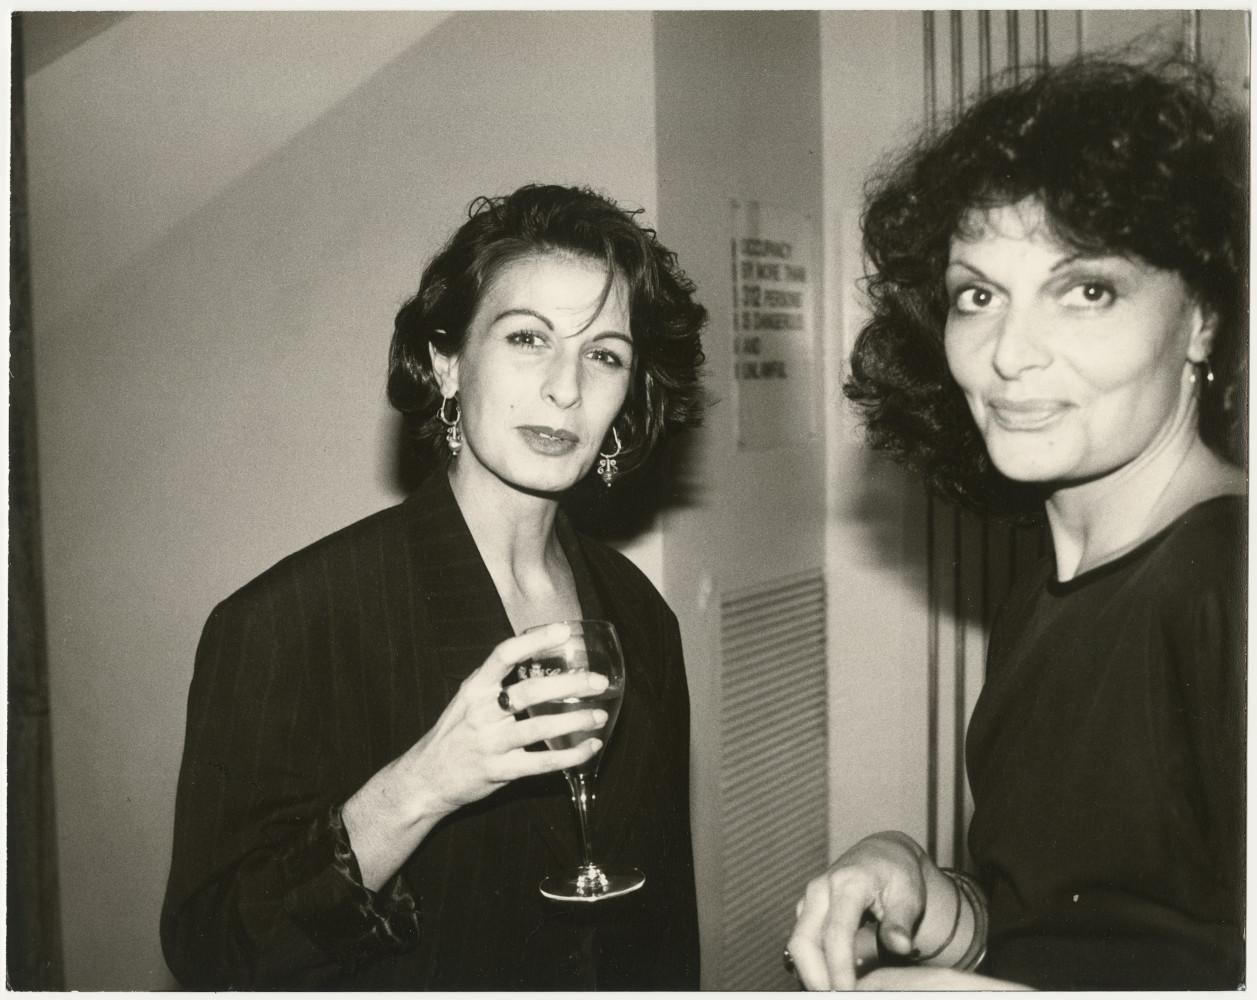 Andy Warhol Portrait Photograph – Alba CLEMENTE & Diane von Furstenberg